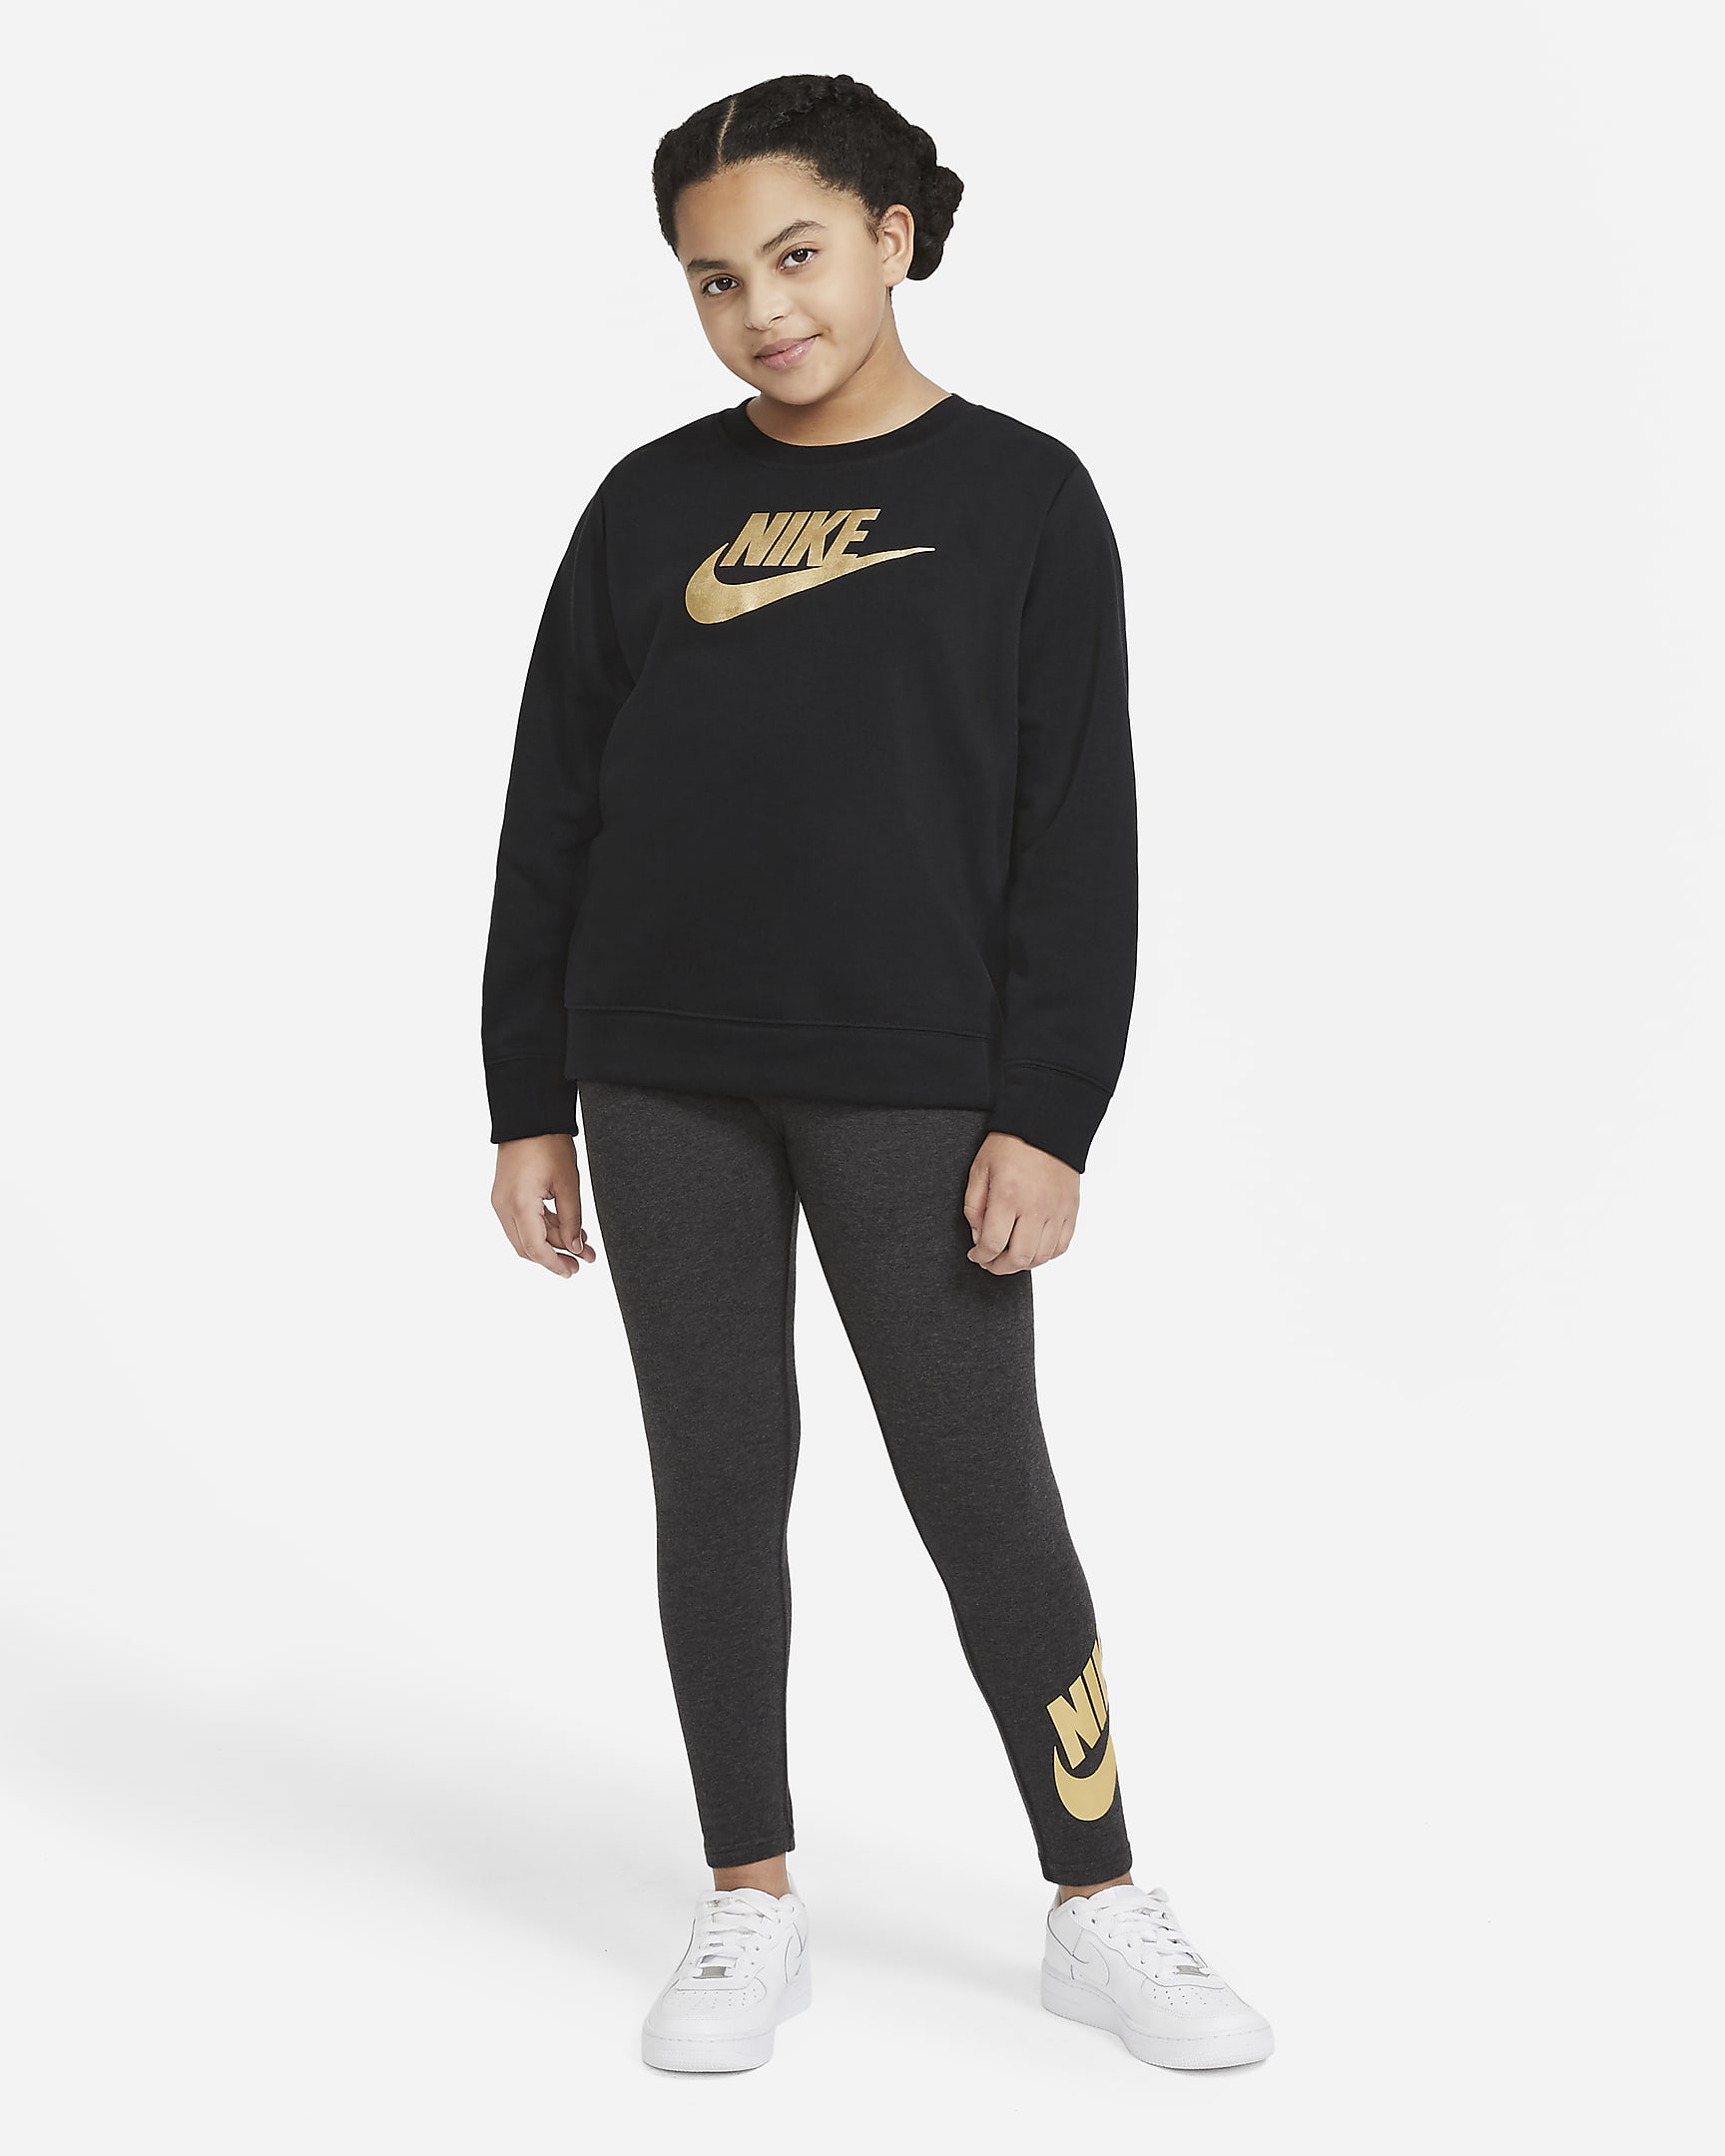 Nike Sportswear Older Kids' (Girls') Crew (Extended Size). Nike DK